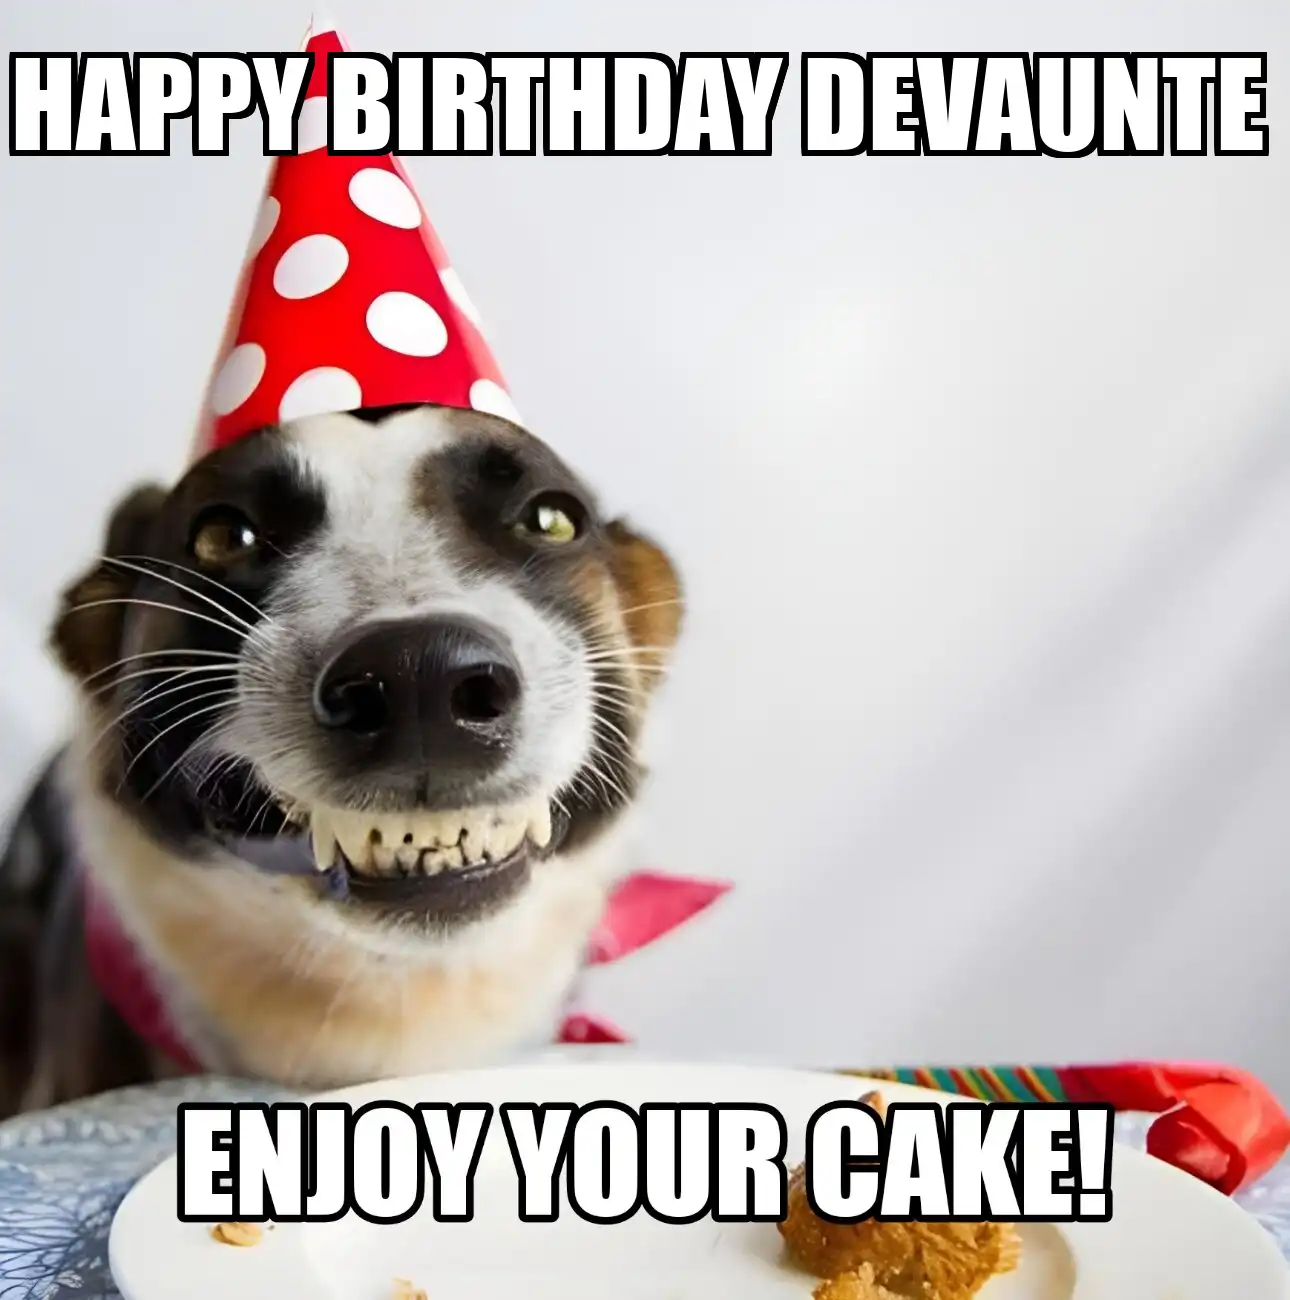 Happy Birthday Devaunte Enjoy Your Cake Dog Meme